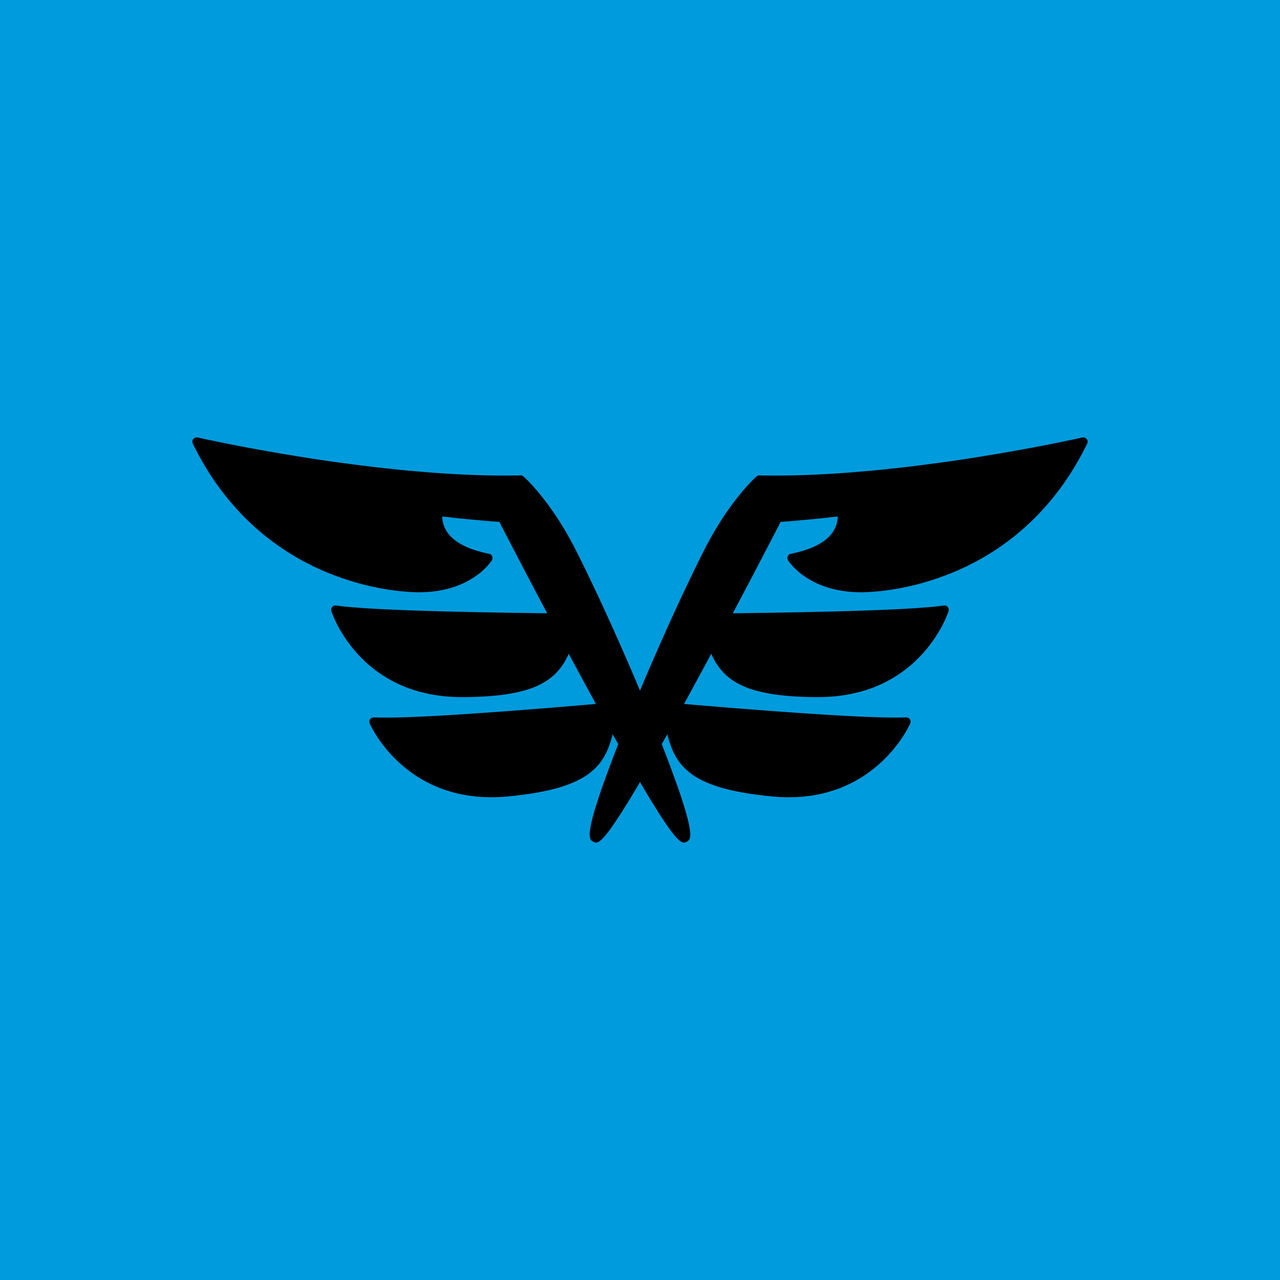 Flying Type Symbol Alola by JorMxDos on DeviantArt